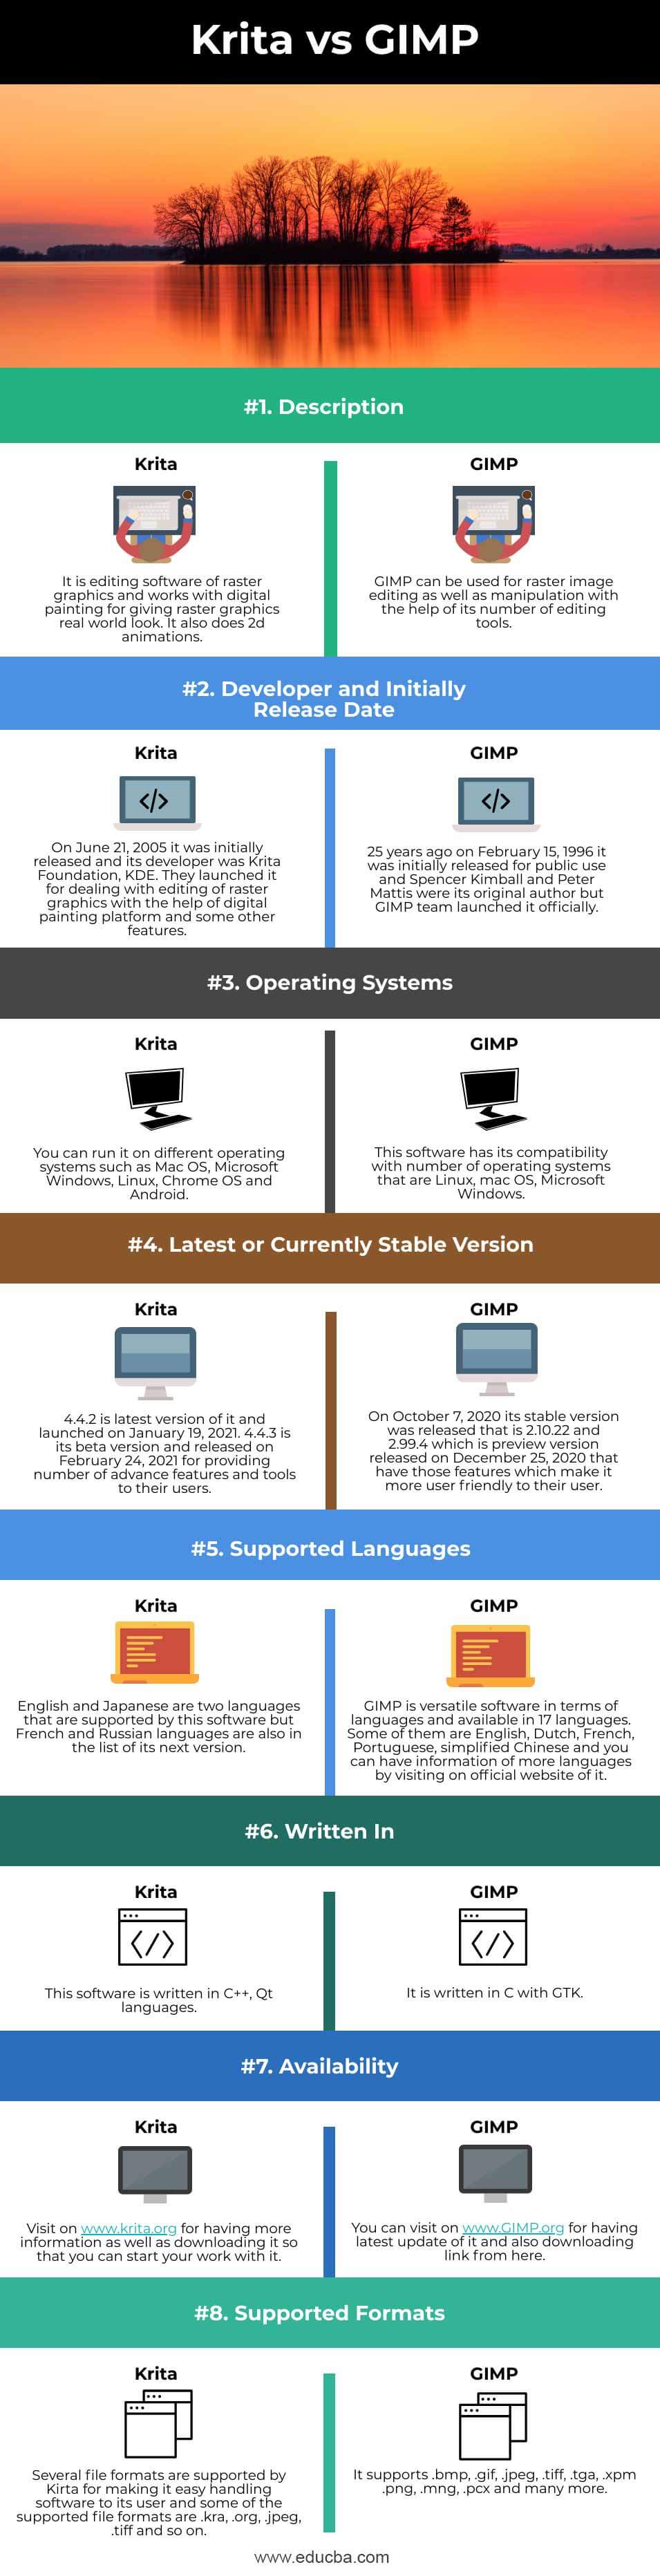 Krita-vs-GIMP-info